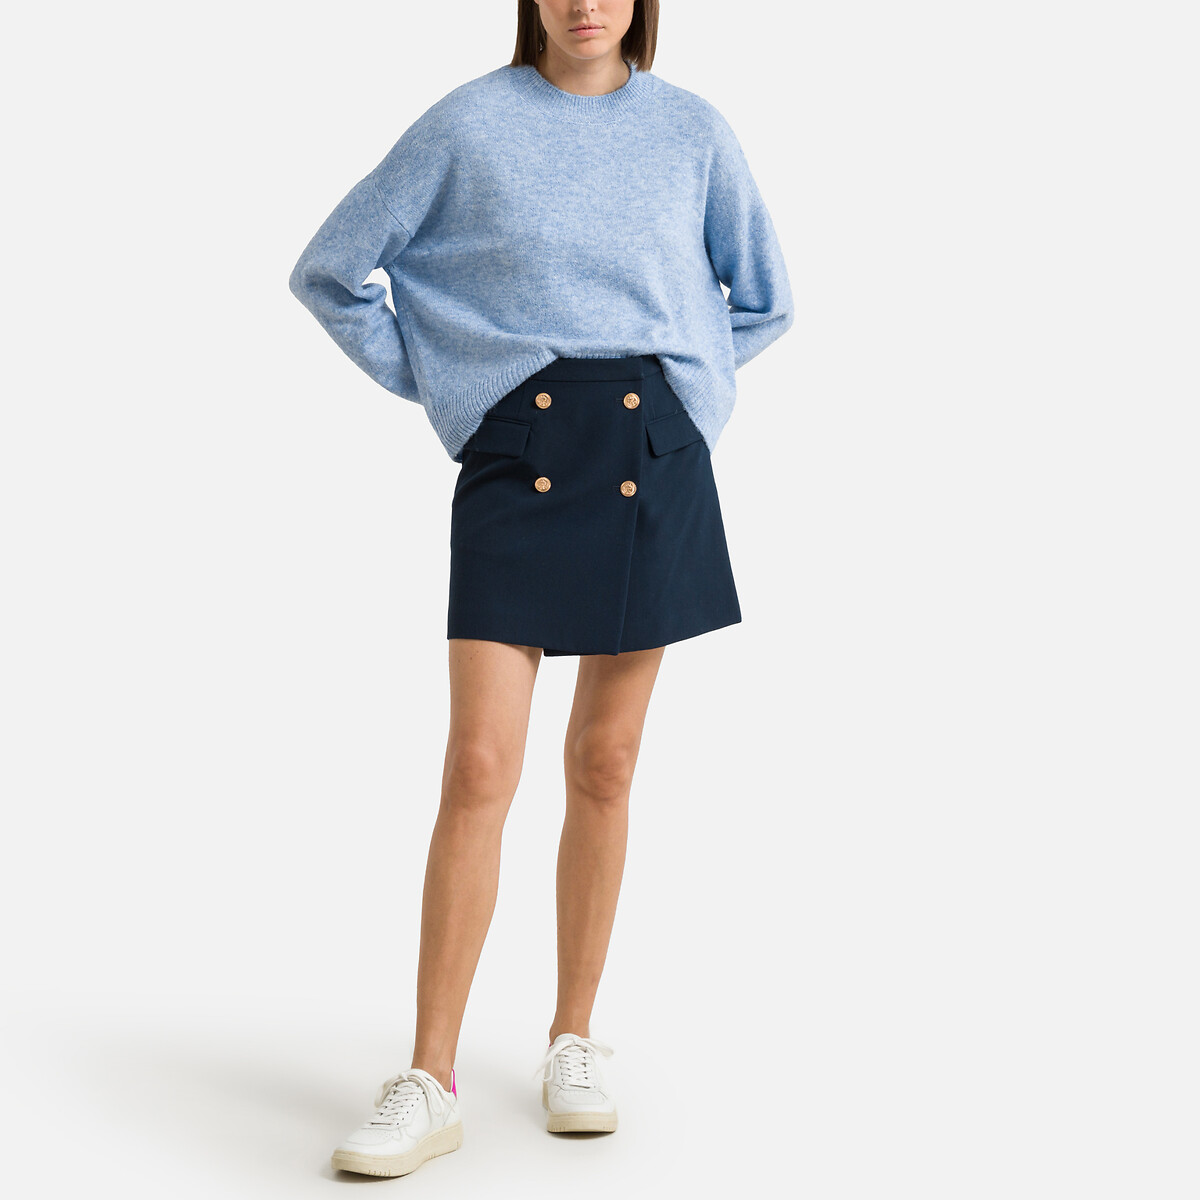 Пуловер Короткий из пышного трикотажа XL синий LaRedoute, размер XL - фото 2